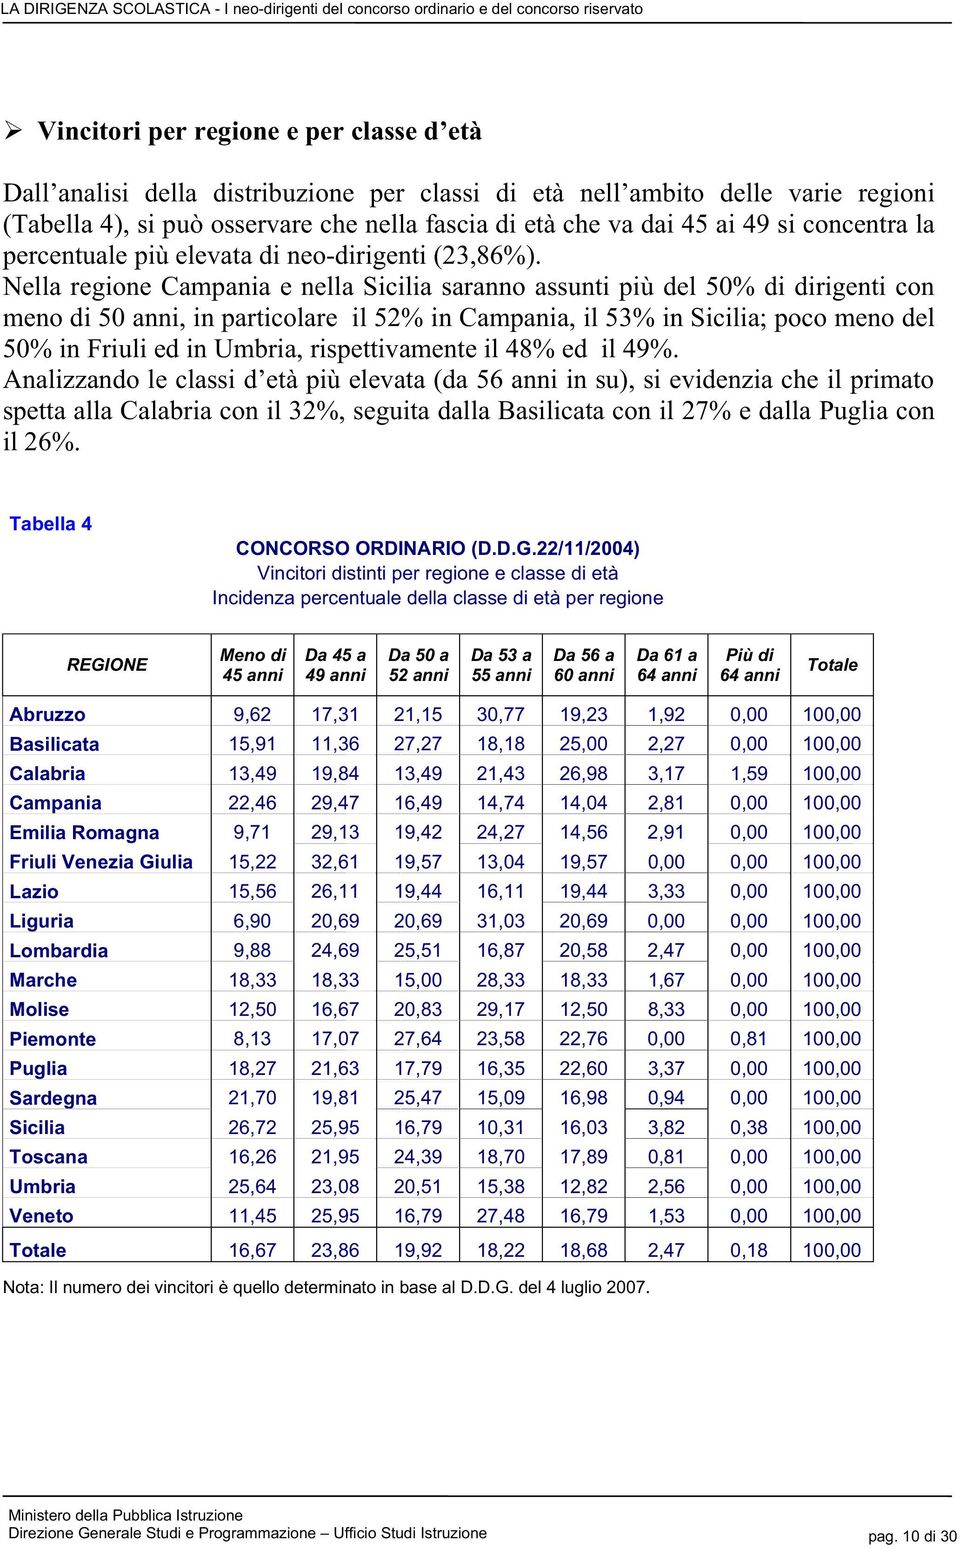 Nella regione Campania e nella Sicilia saranno assunti più del 50% di dirigenti con meno di 50 anni, in particolare il 52% in Campania, il 53% in Sicilia; poco meno del 50% in Friuli ed in Umbria,